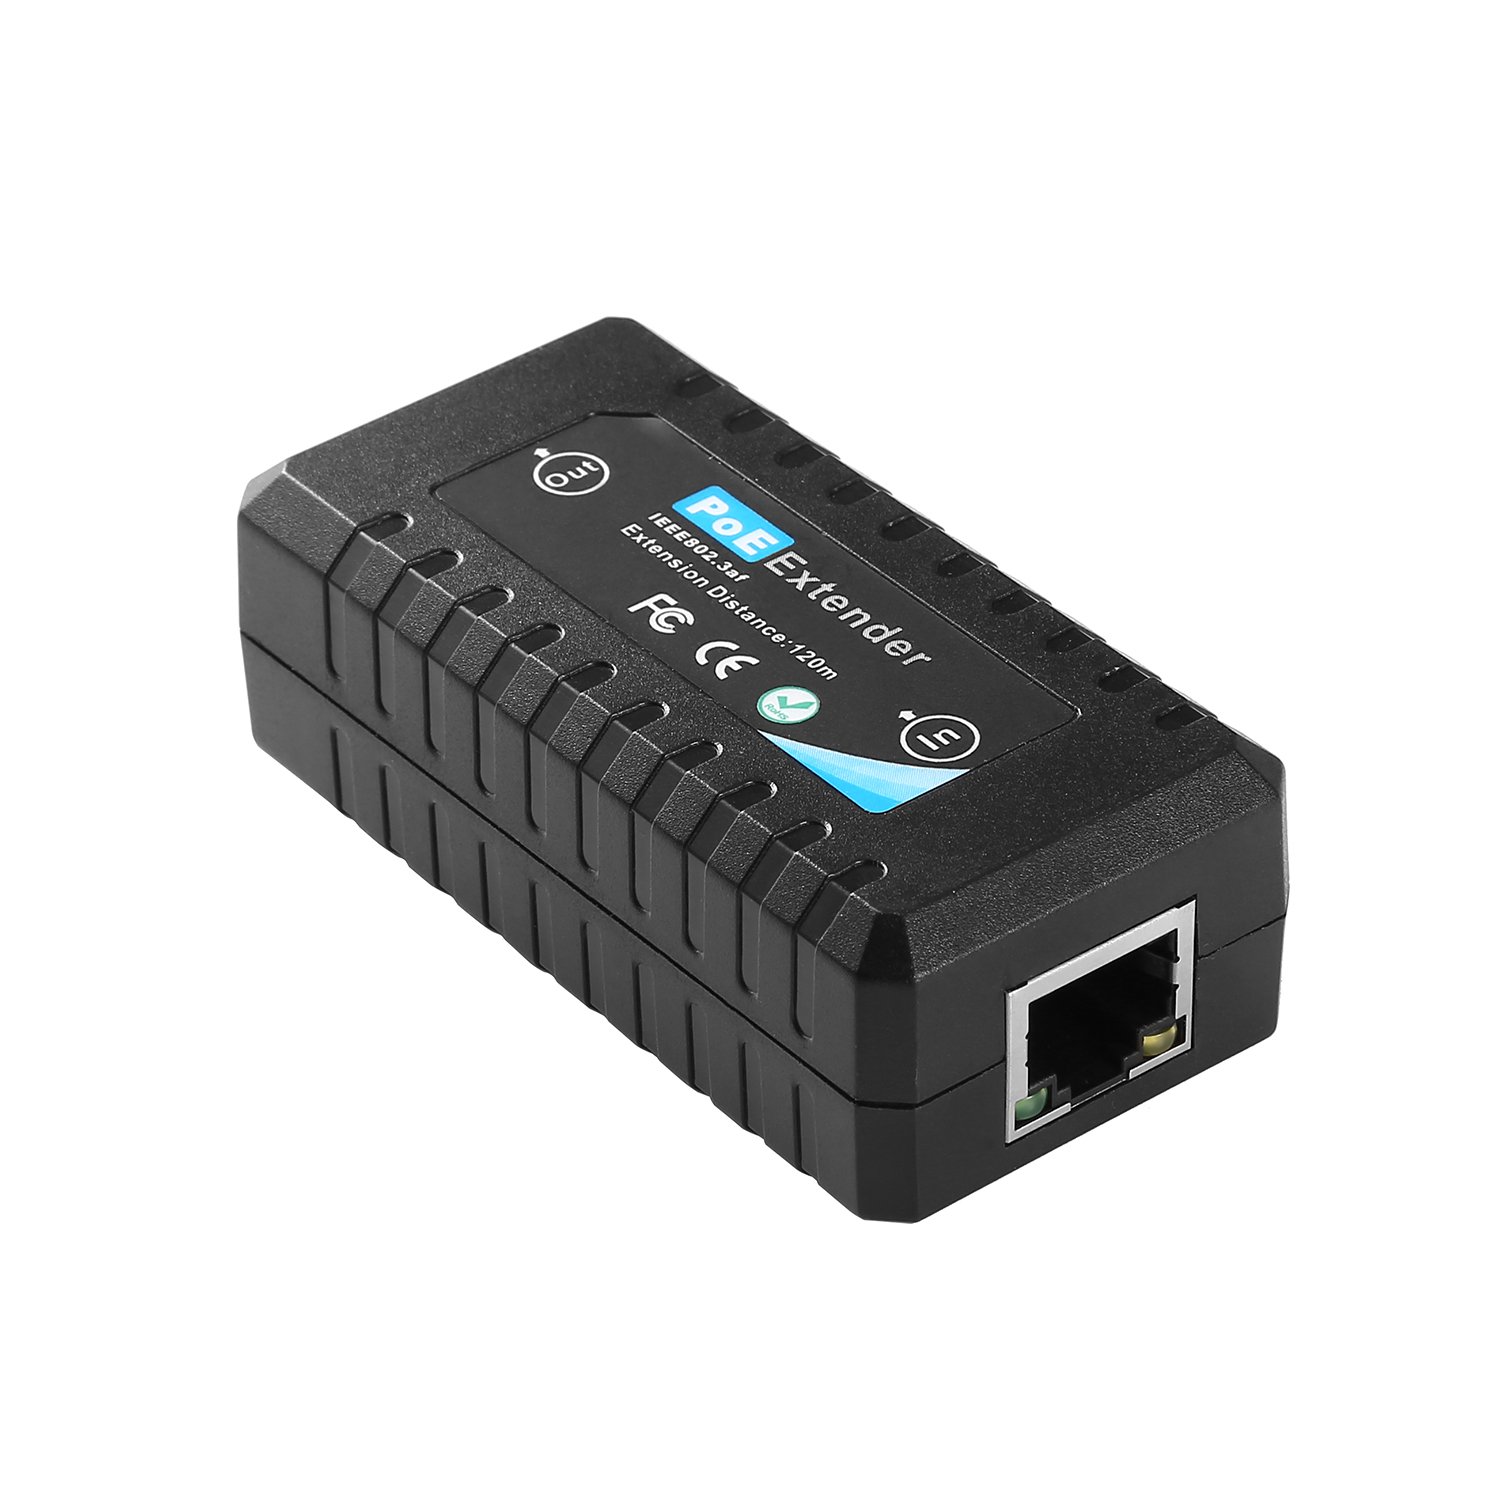 Revotech PoE-Repeater für PoE-IP-Kamera über Cat5- oder UTP-Kabel (POE5002), 10,100 m, 1 Port